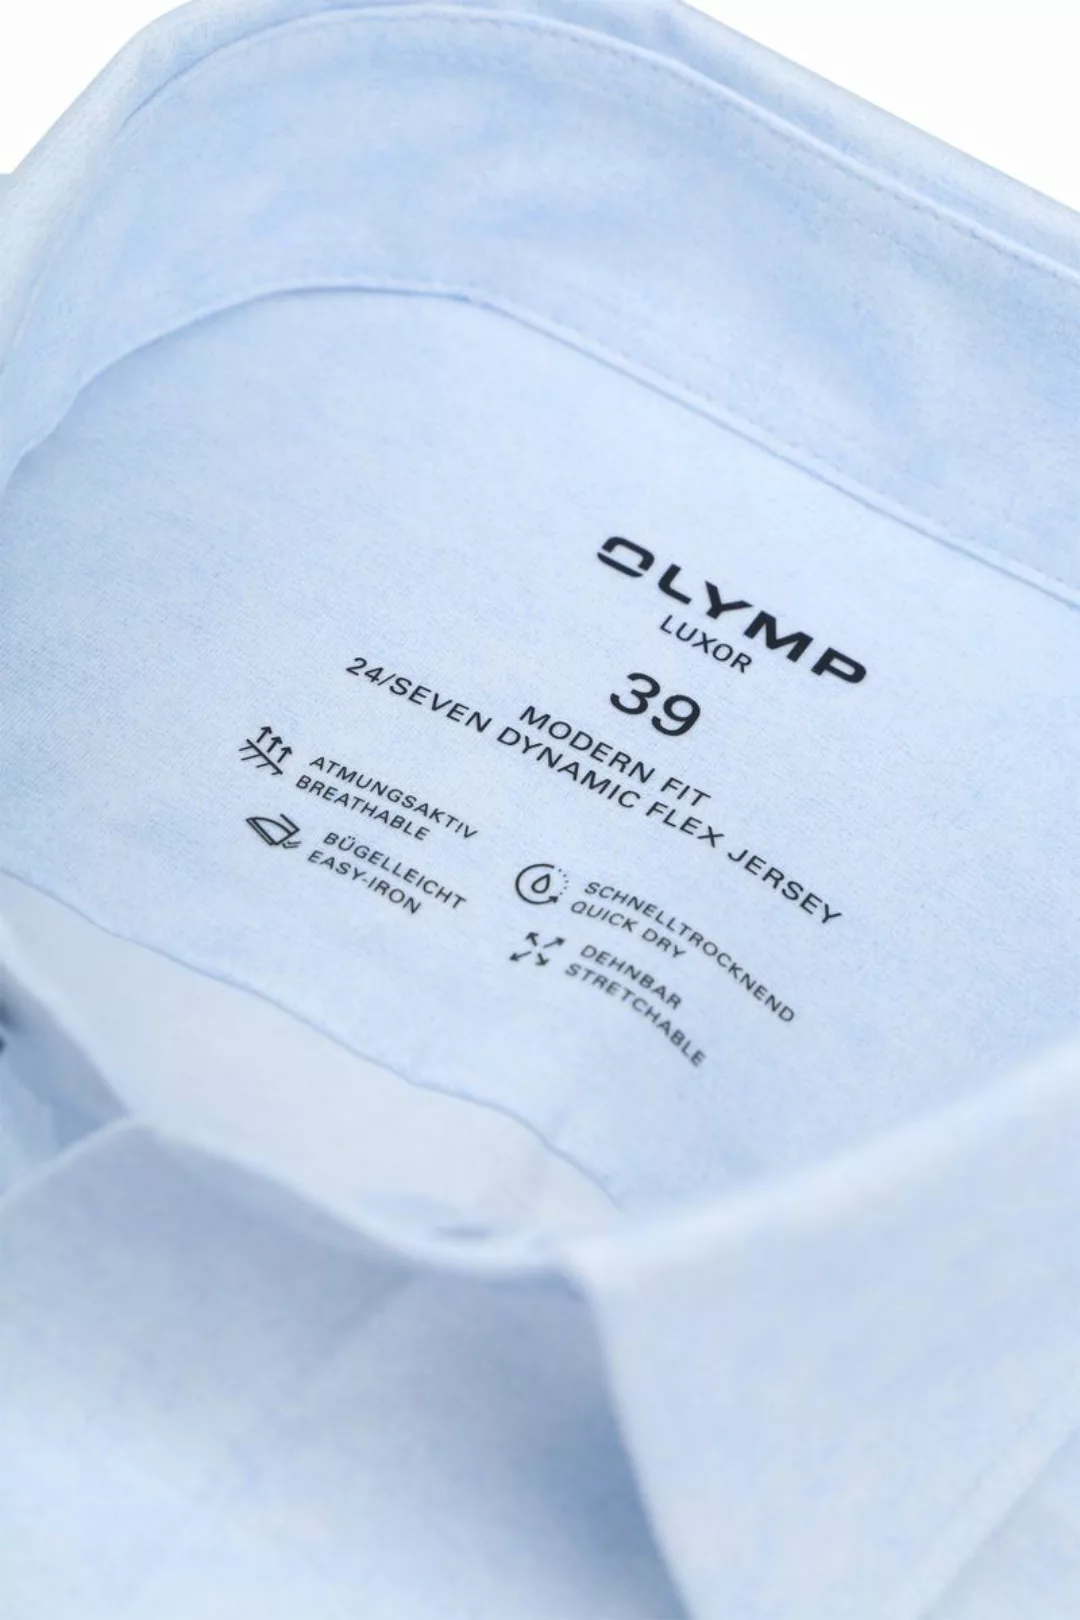 OLYMP Luxor Hemd Stretch Hellblau  - Größe 38 günstig online kaufen